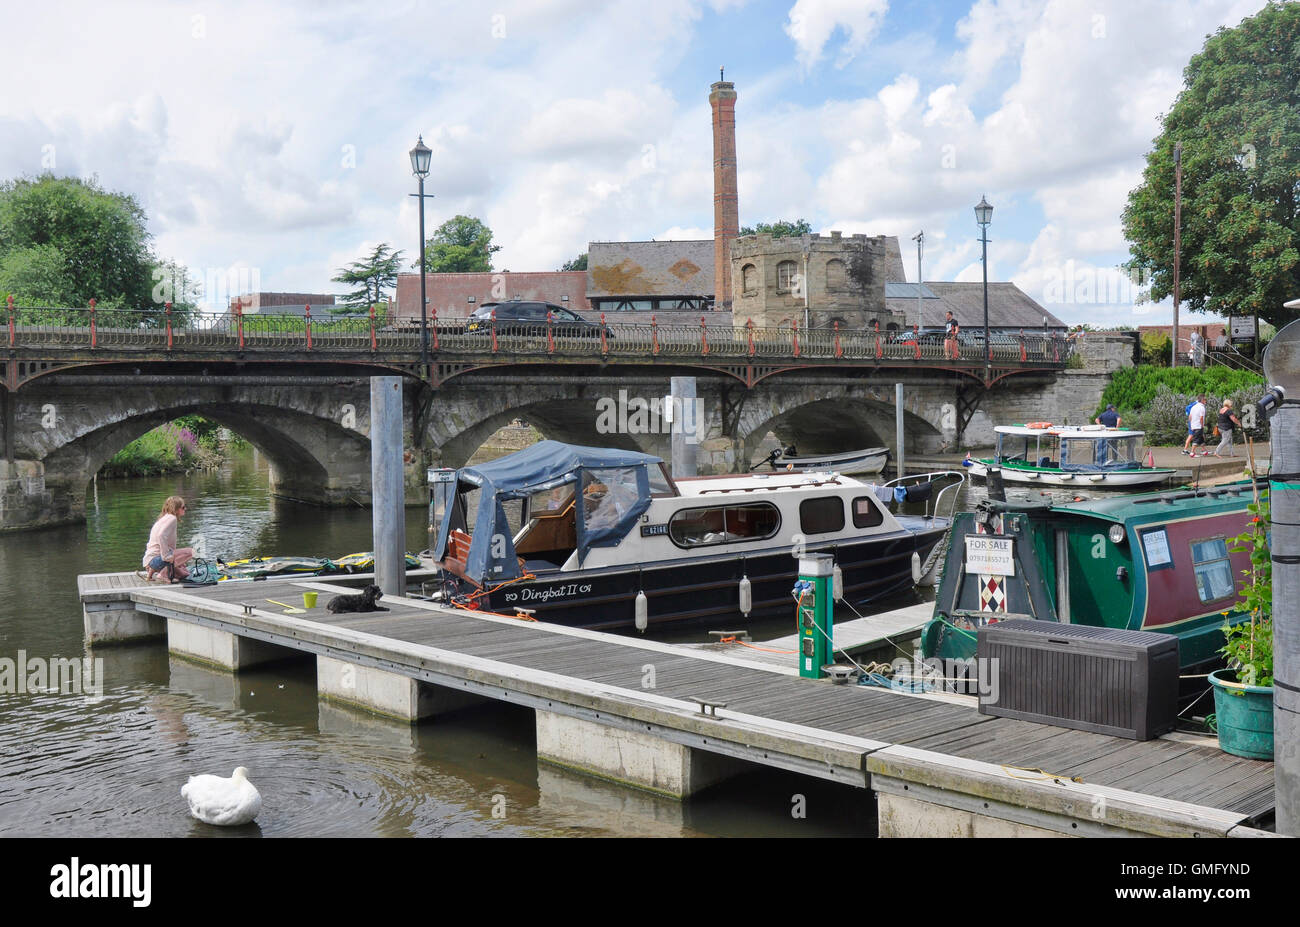 Warwickshire - Stratford Upon Avon - à la marina - la jetée - amarré bateaux de croisière de vacances - contexte et du pont de la vieille ville skyline Banque D'Images